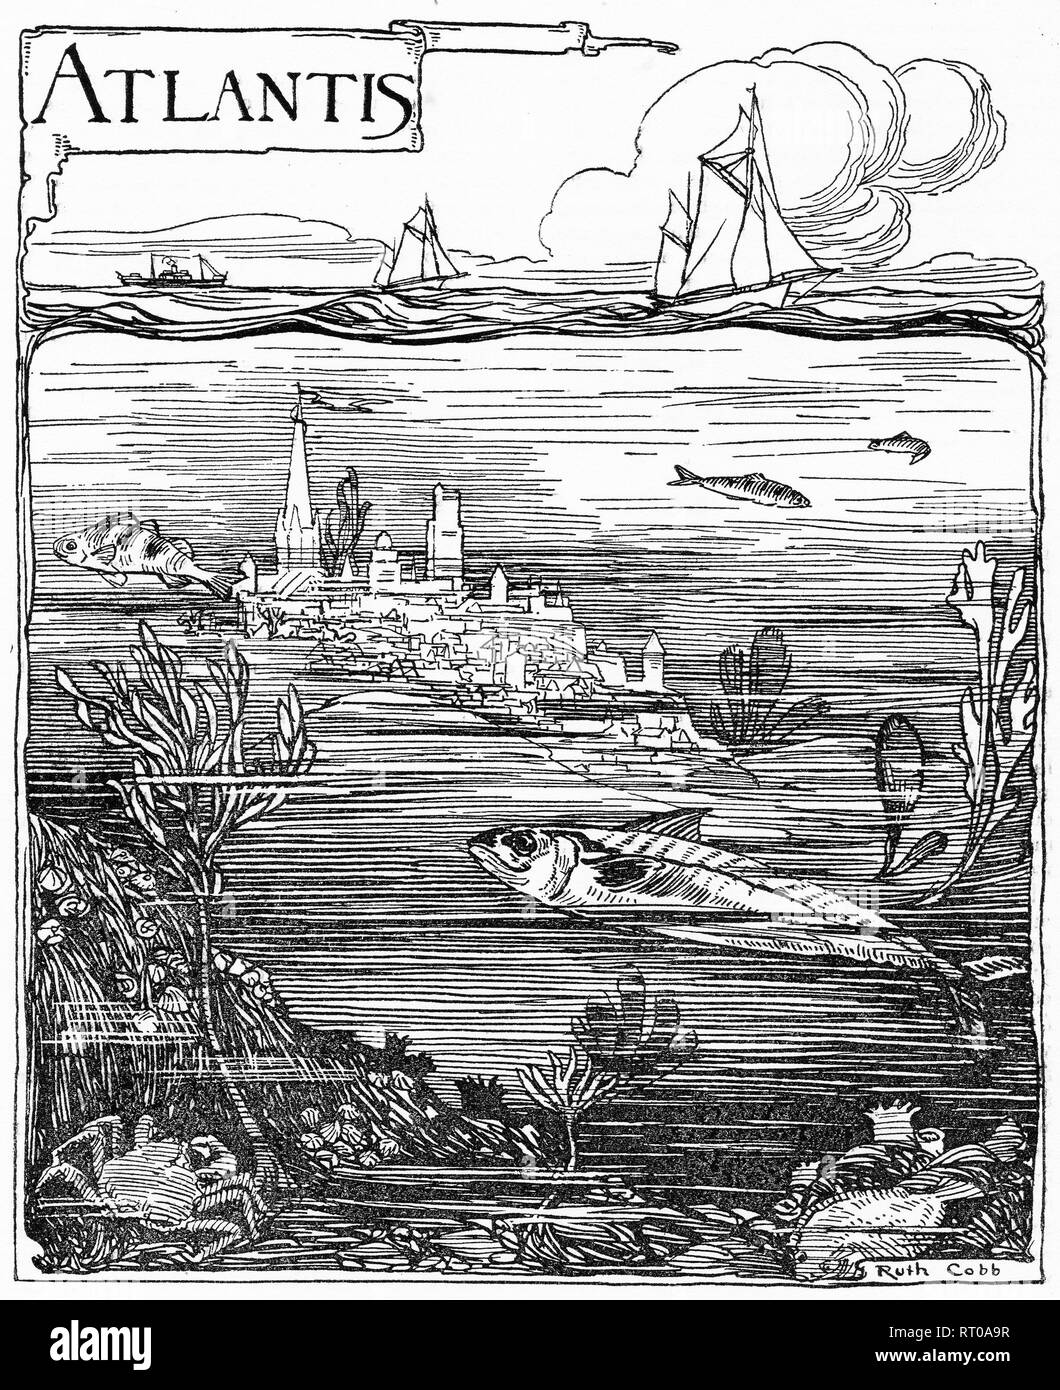 Grabado de la imaginaria ciudad de Atlantis en su tumba inundada. Desde parlanchín magazine, 1925 Foto de stock